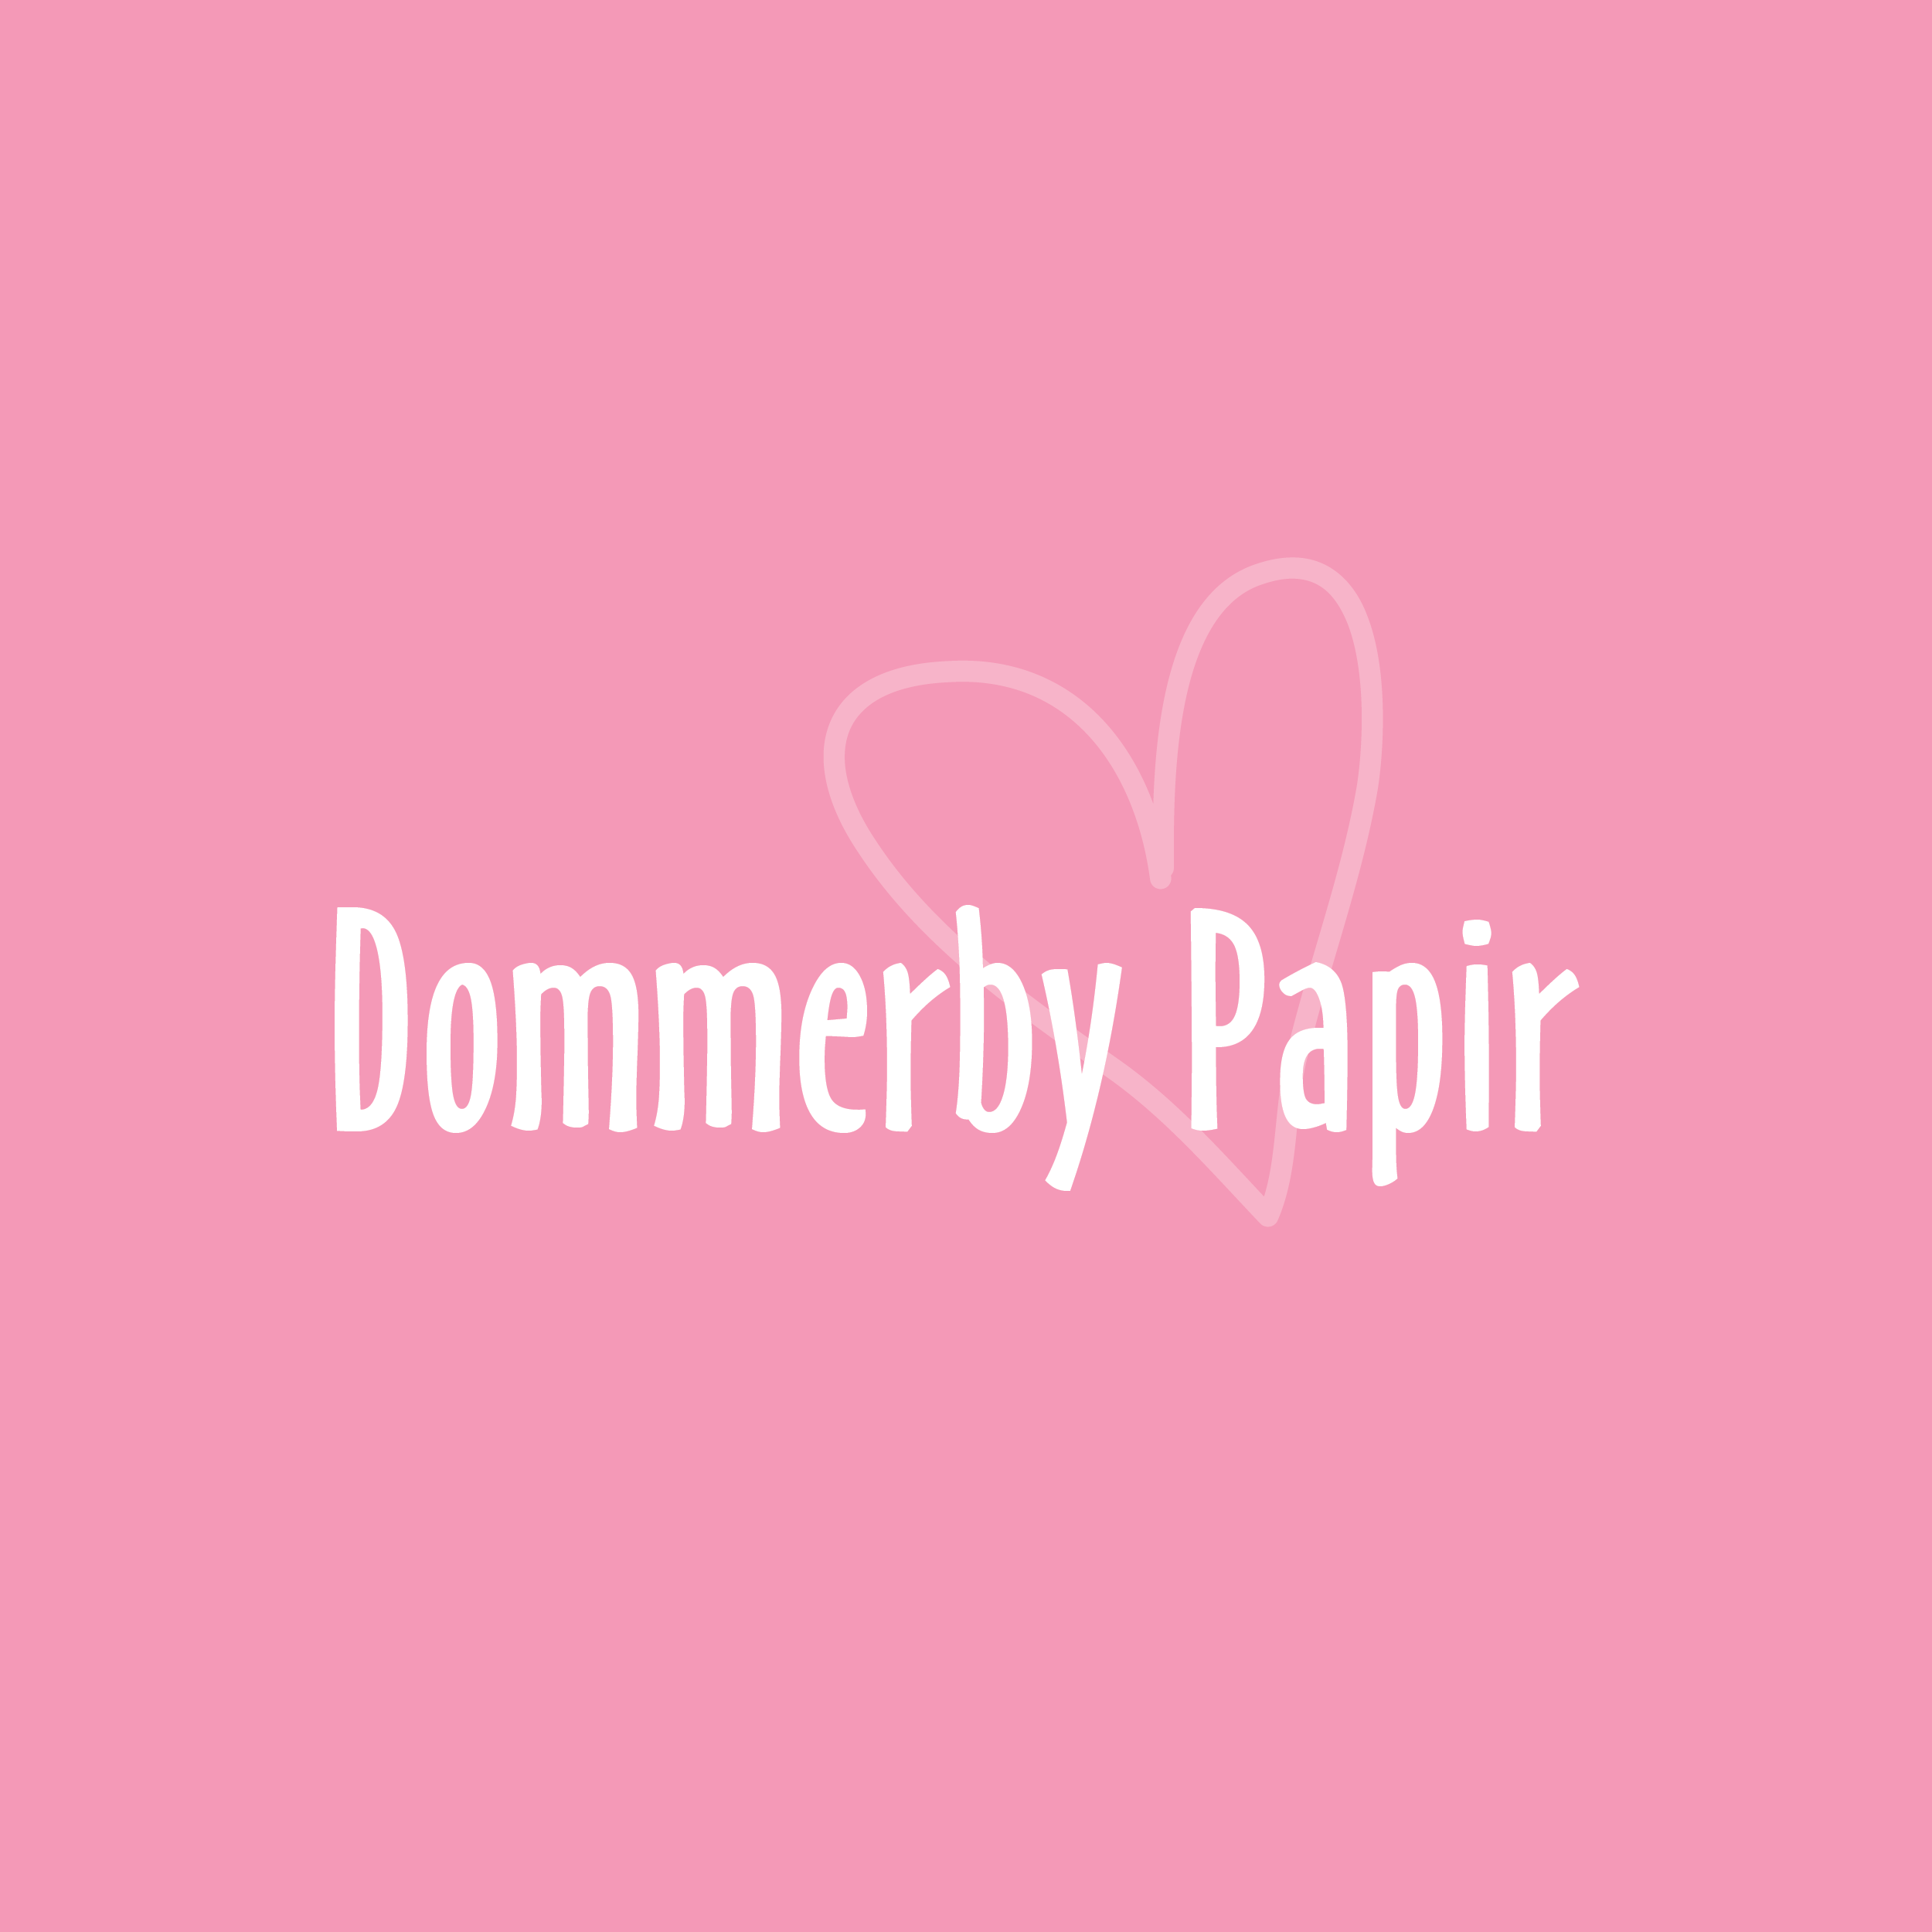 https://dommerbypapir.dk/shop/63-dommerby-papir-design/